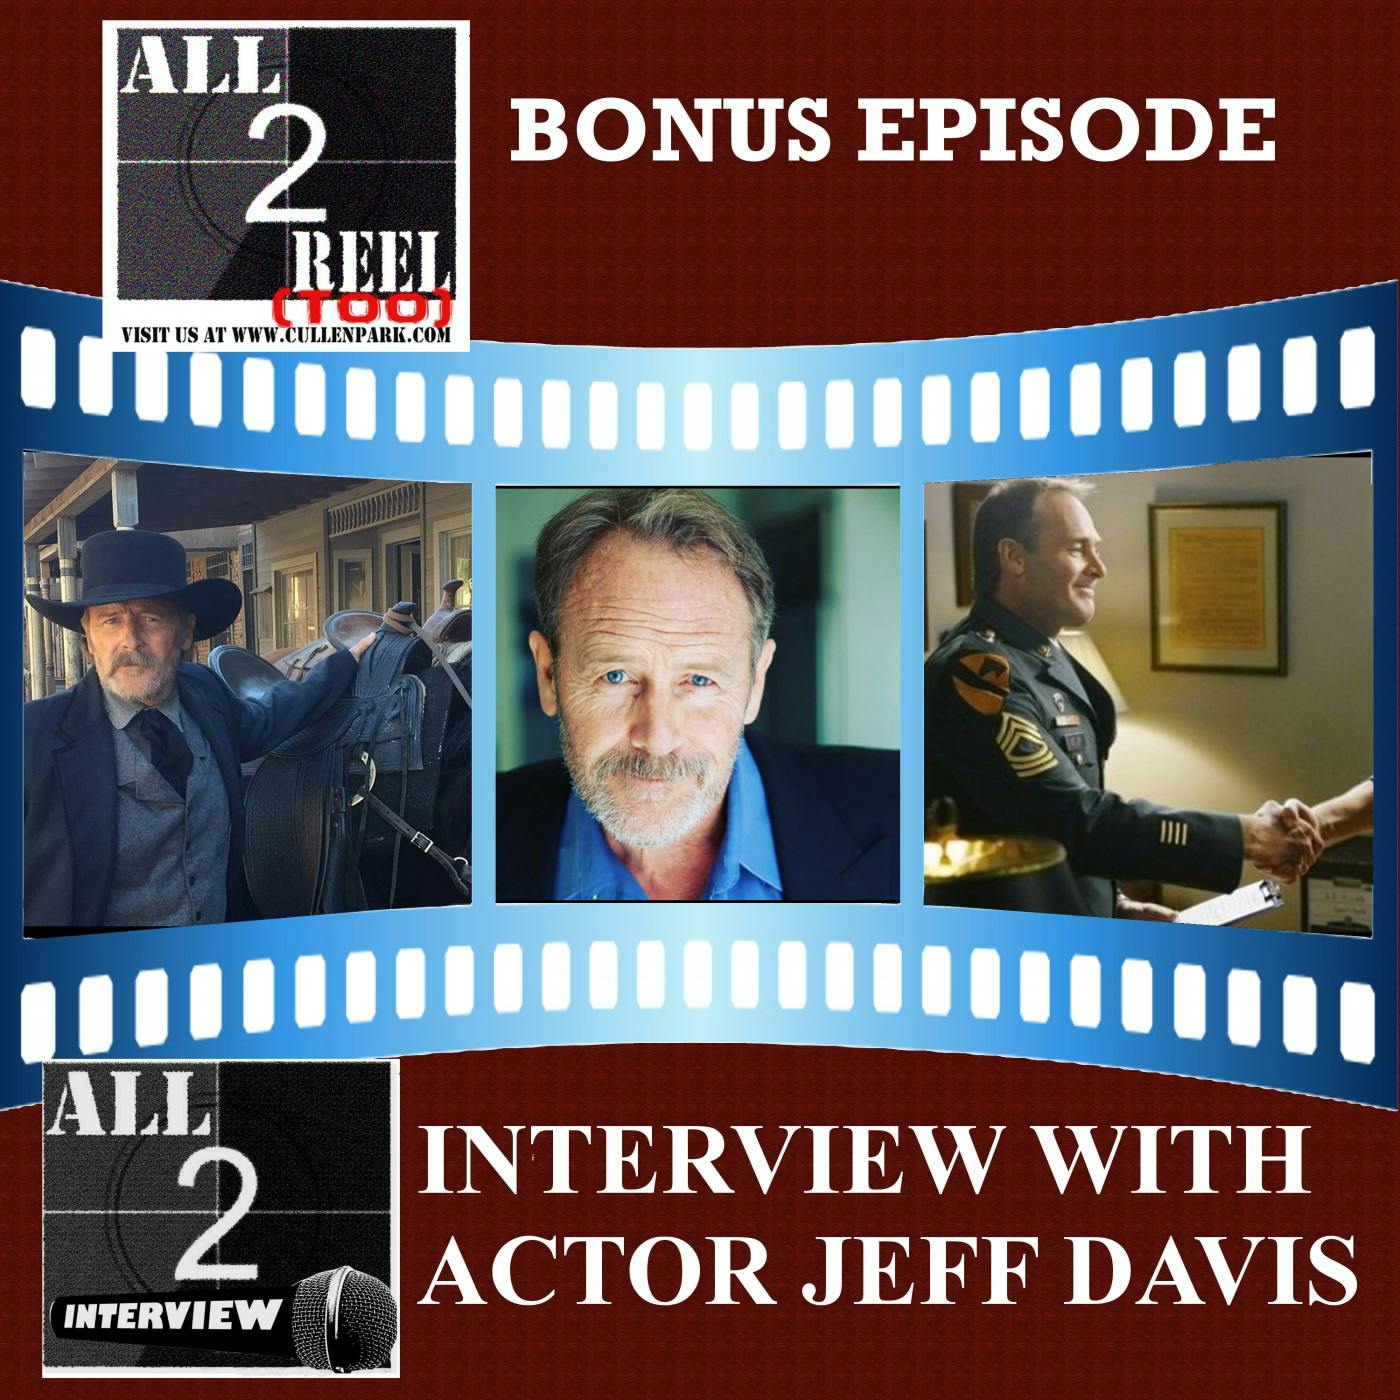 JEFF DAVIS INTERVIEW